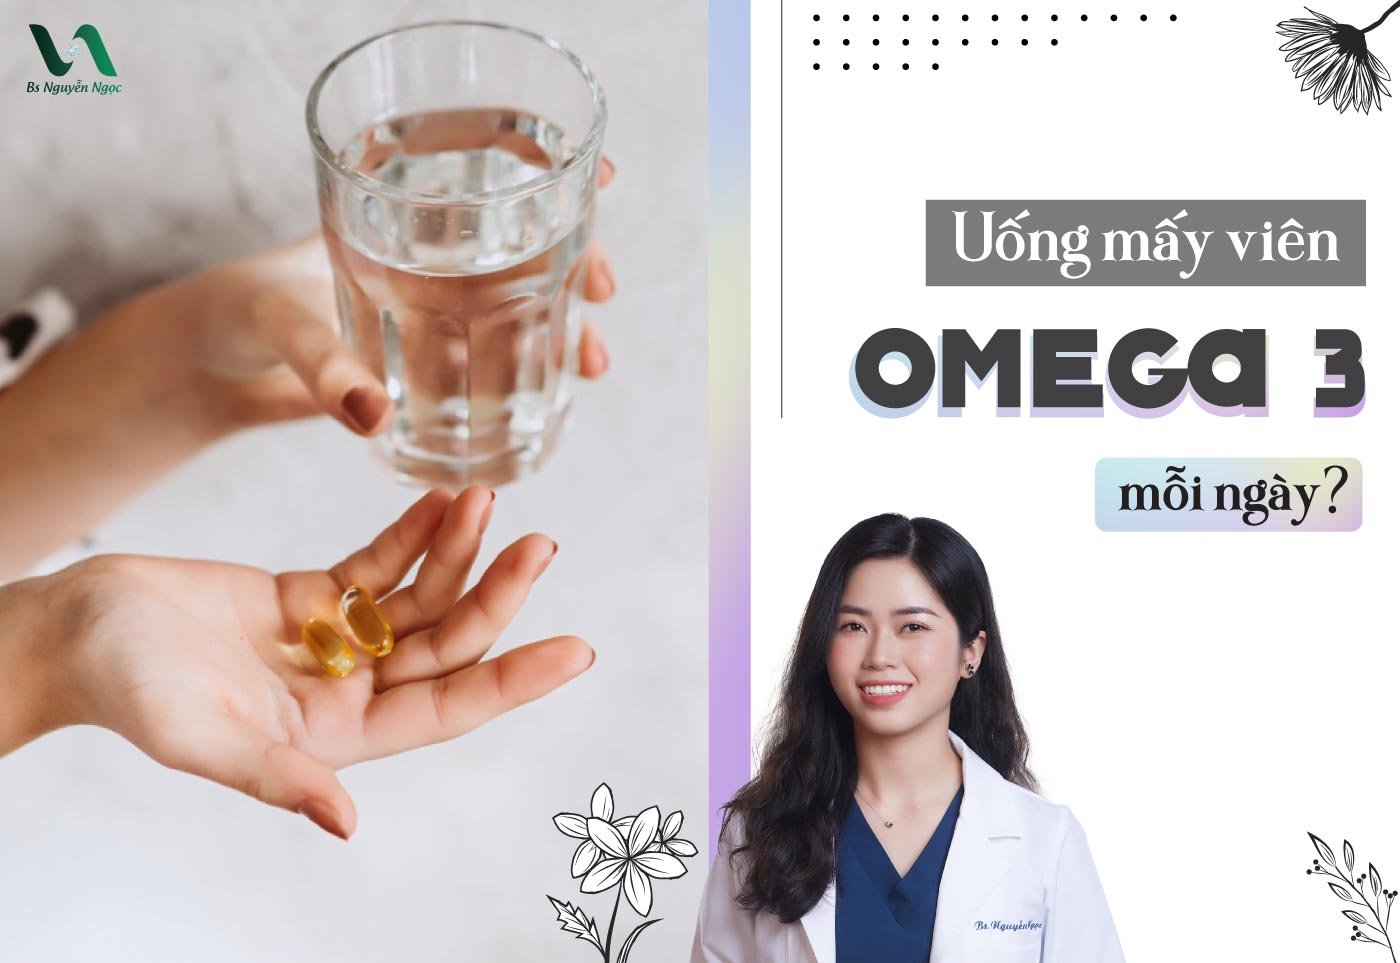 Uống mấy viên omega 3 mỗi ngày?